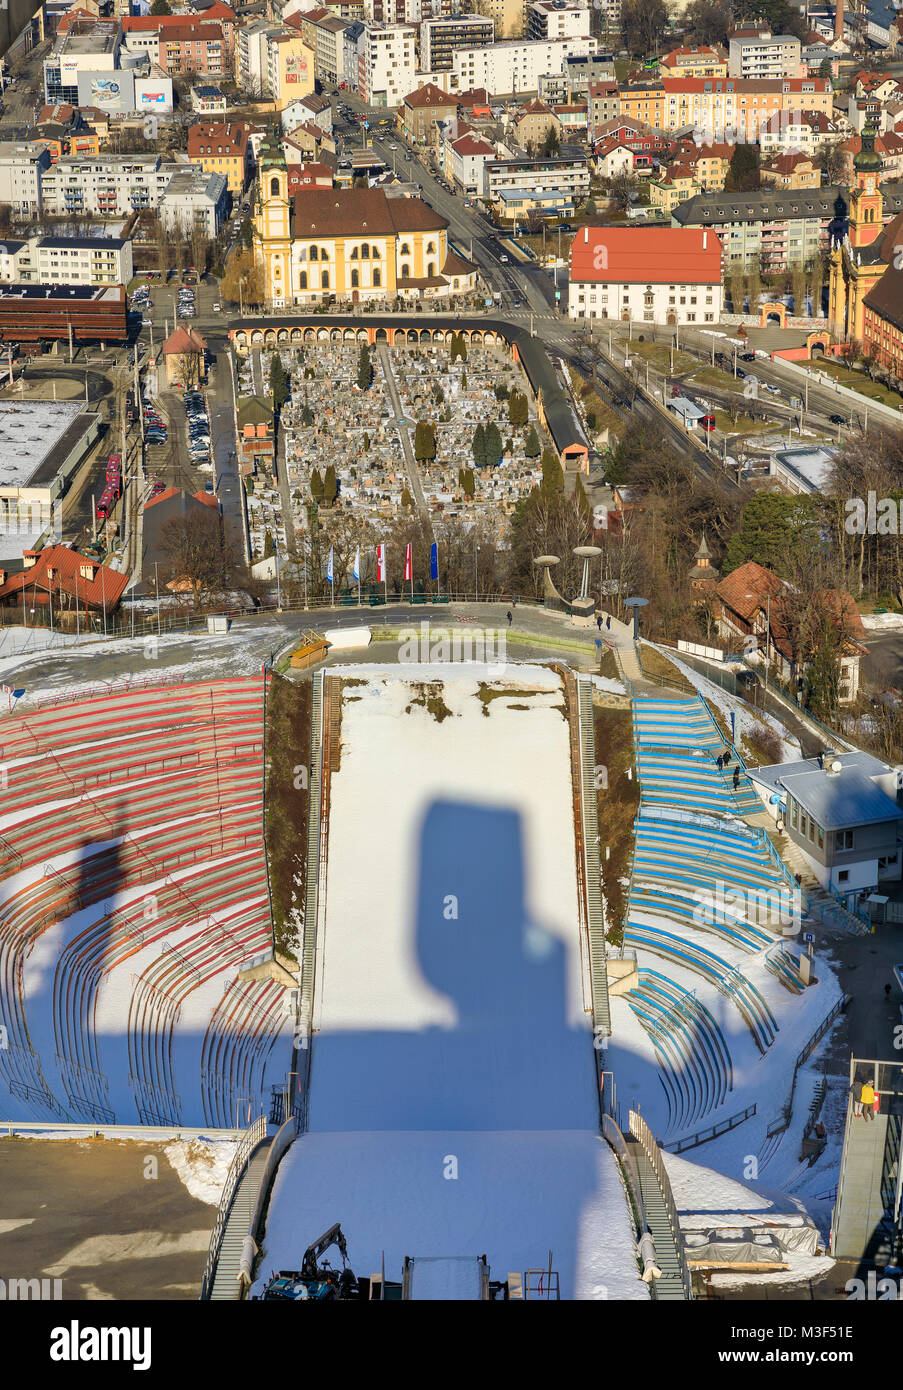 INNSBRUCK, Austria - 27 gennaio: (nota del redattore: latitudine di esposizione di questa immagine è stata aumentata digitalmente.) lo Stadio Olimpico e il cimitero sono visto dalla cima del Bergisel Ski Jump on gennaio 27, 2018 a Innsbruck, Austria. Foto Stock